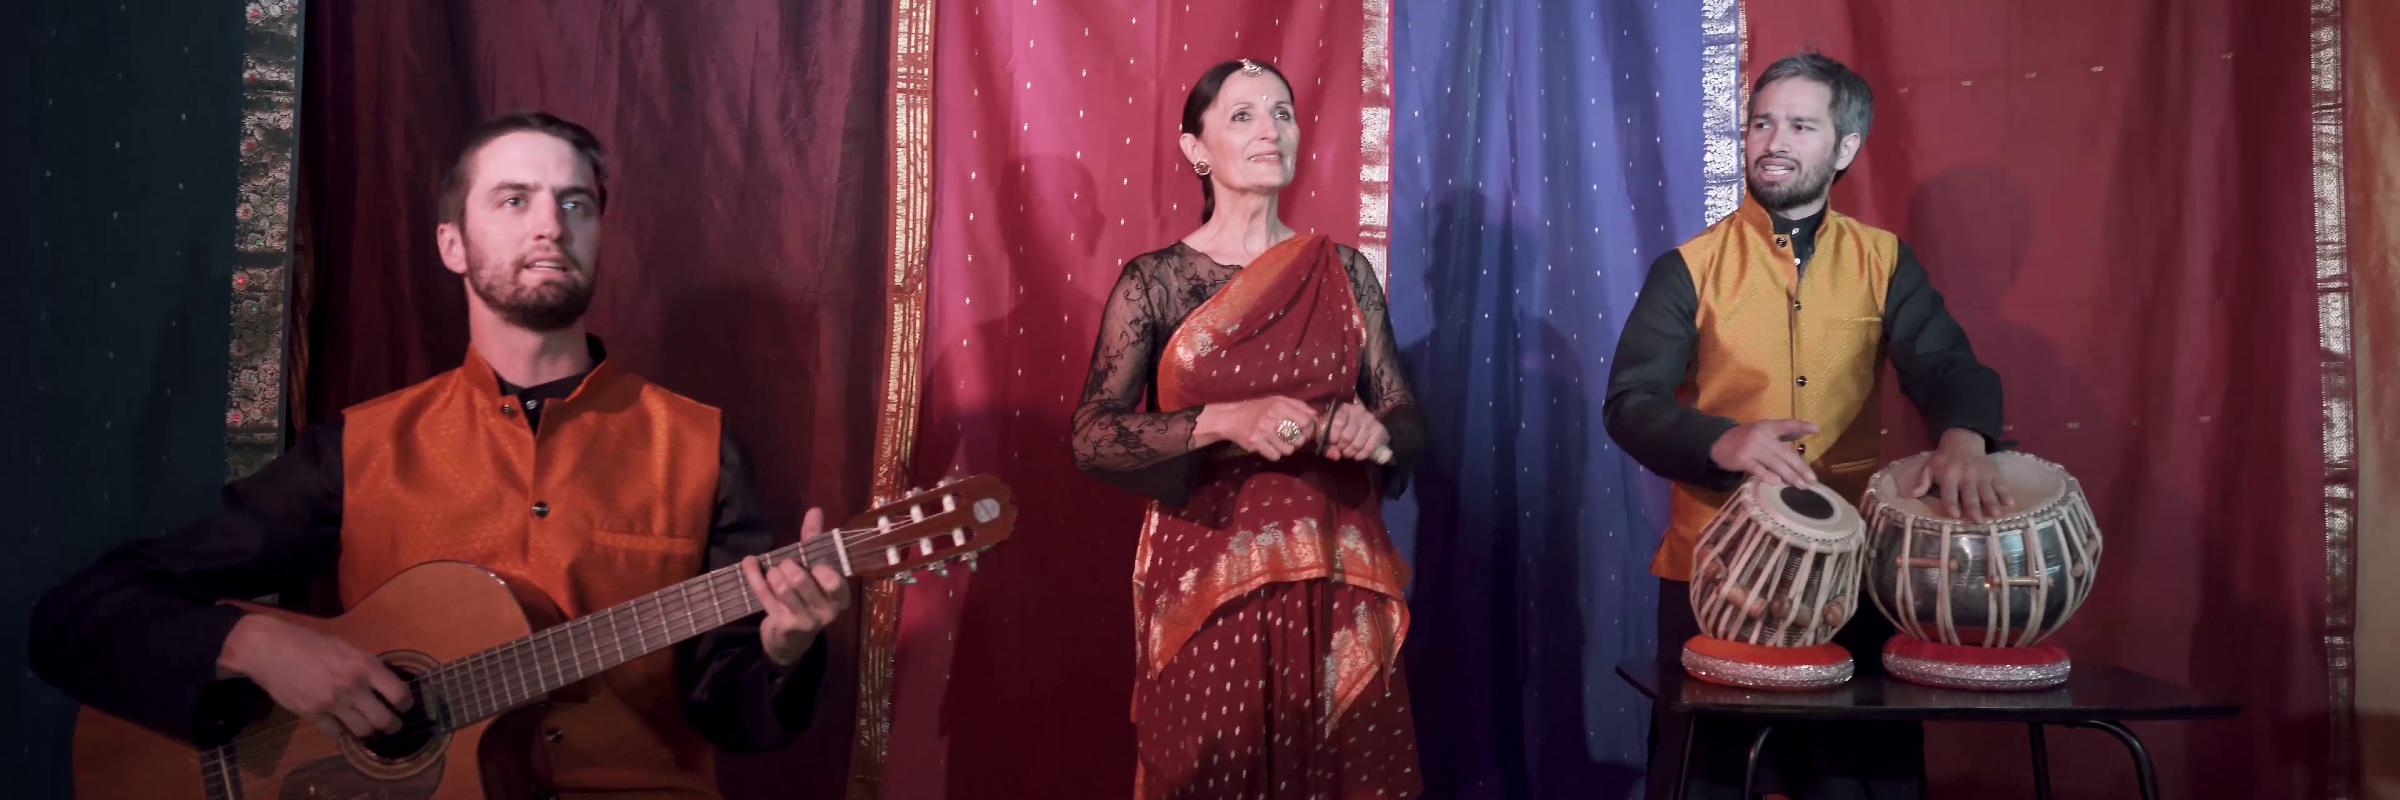 NamAdiou, aux rythmes de l'Inde, groupe de musique Musiques du monde en représentation à Haute Garonne - photo de couverture